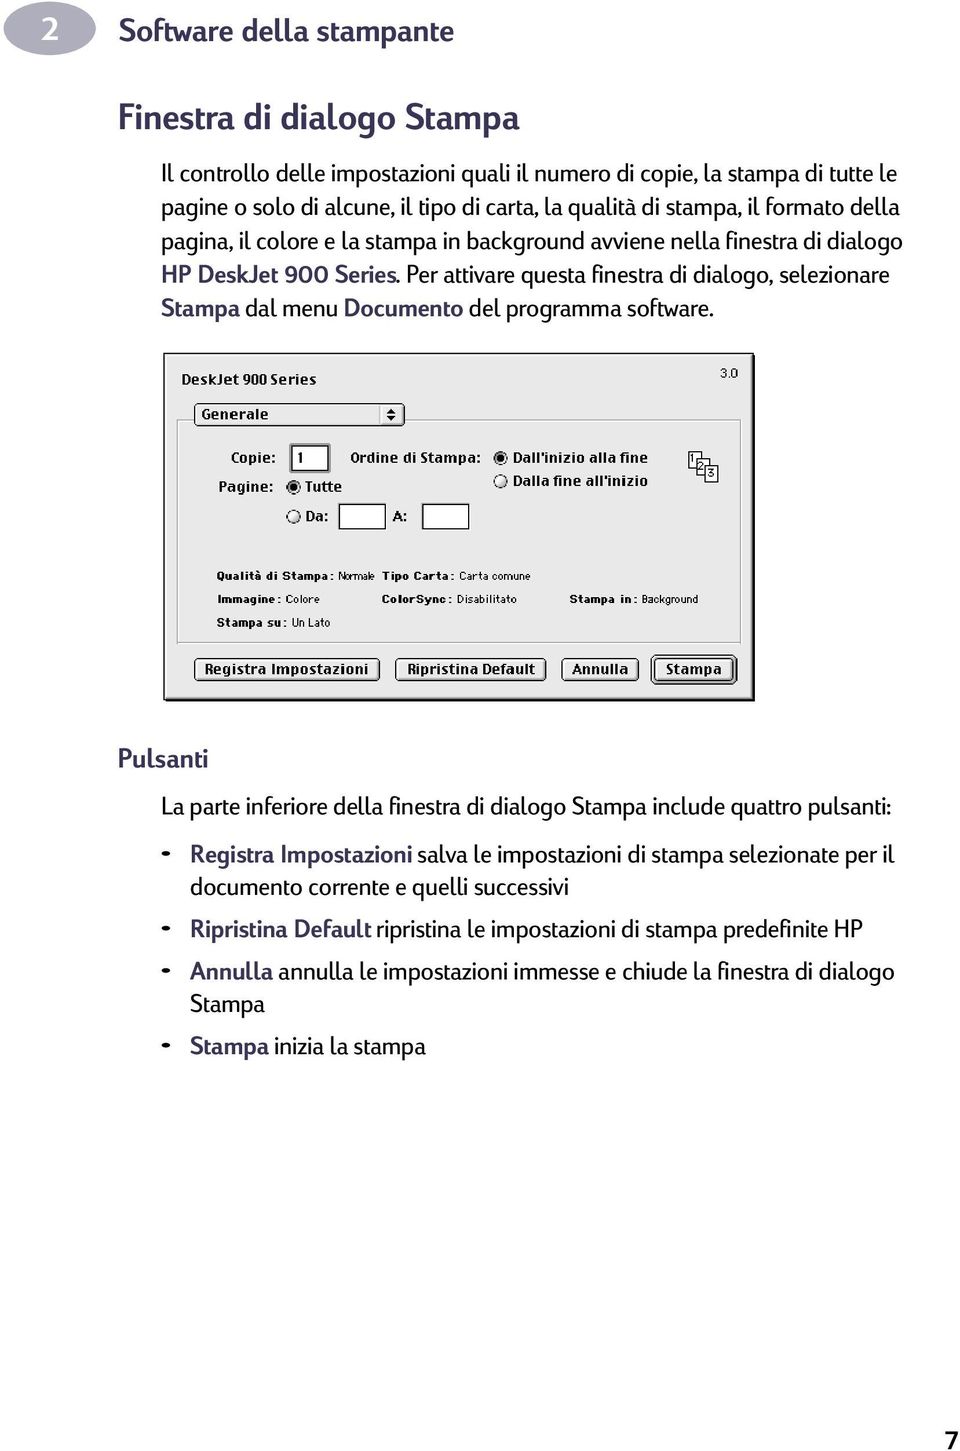 Per attivare questa finestra di dialogo, selezionare Stampa dal menu Documento del programma software.